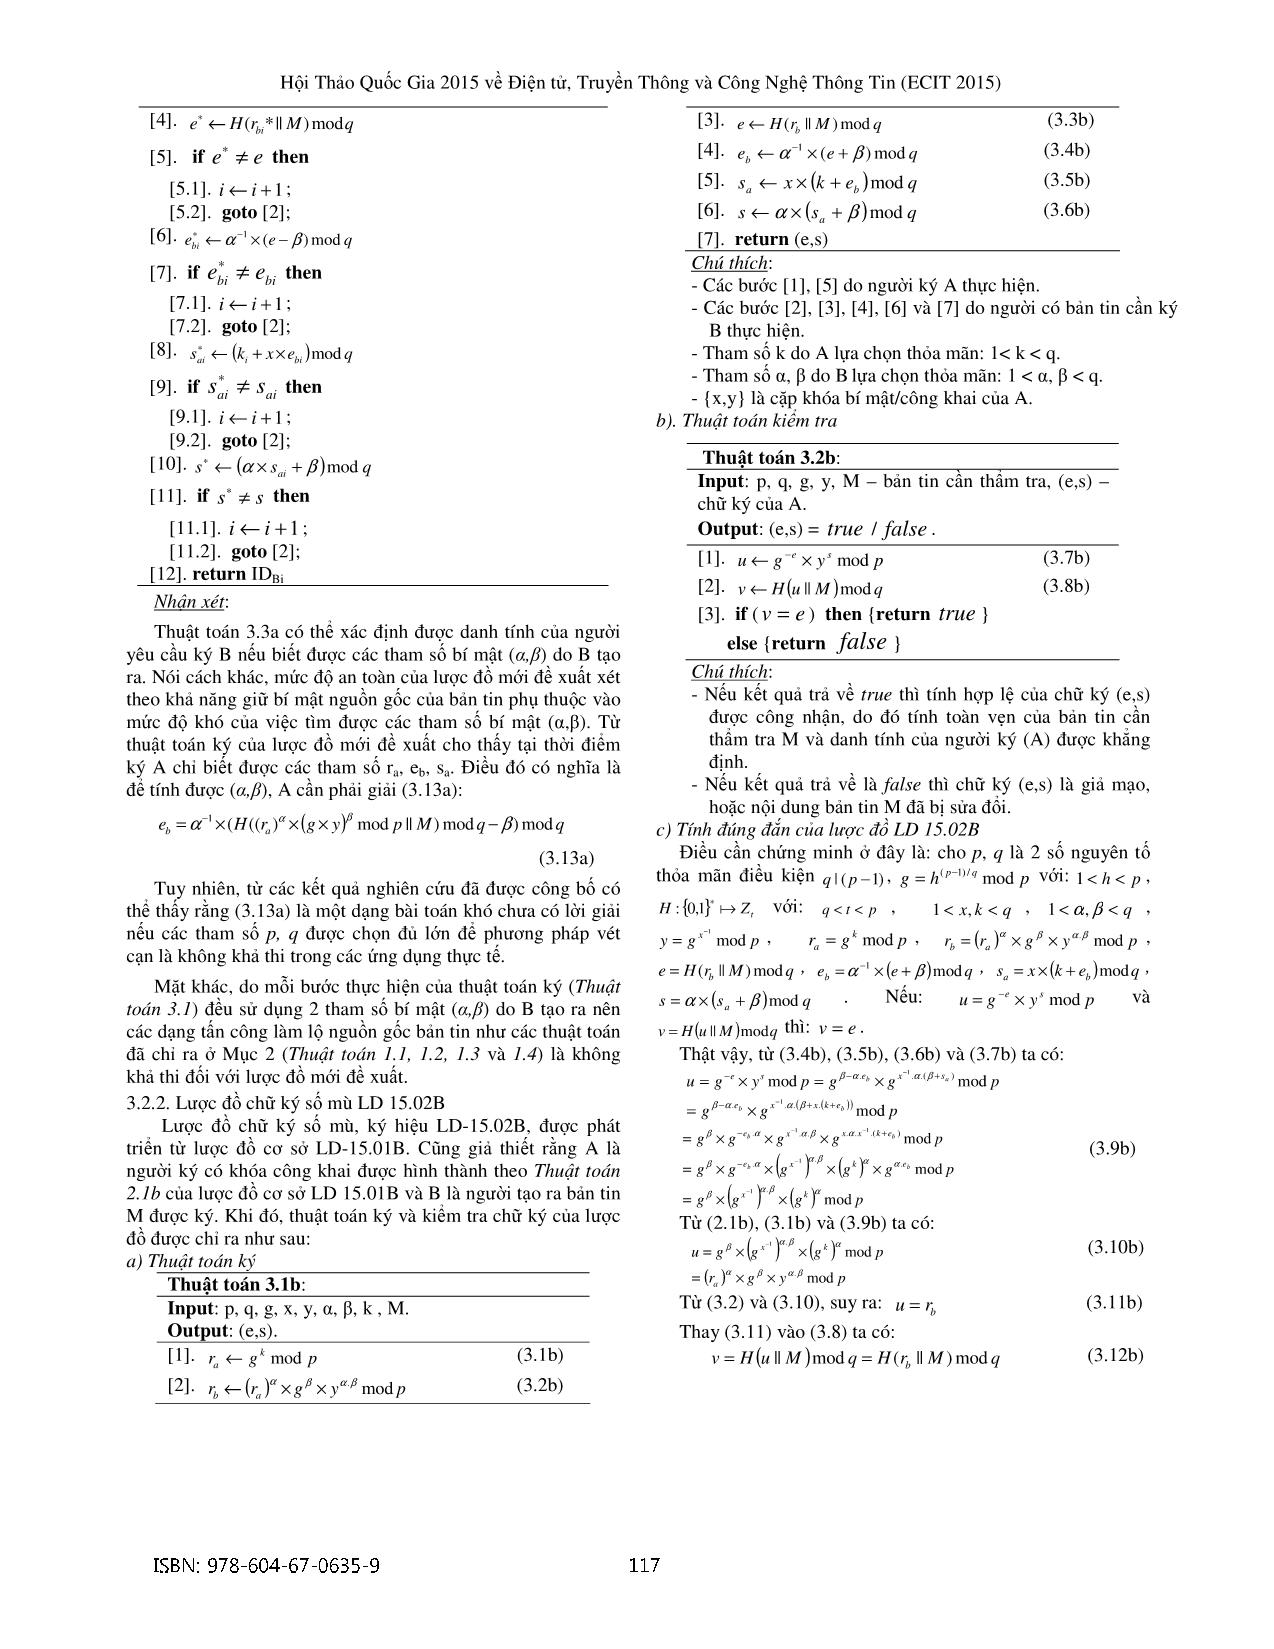 Phát triển lược đồ chữ ký số mù trang 6